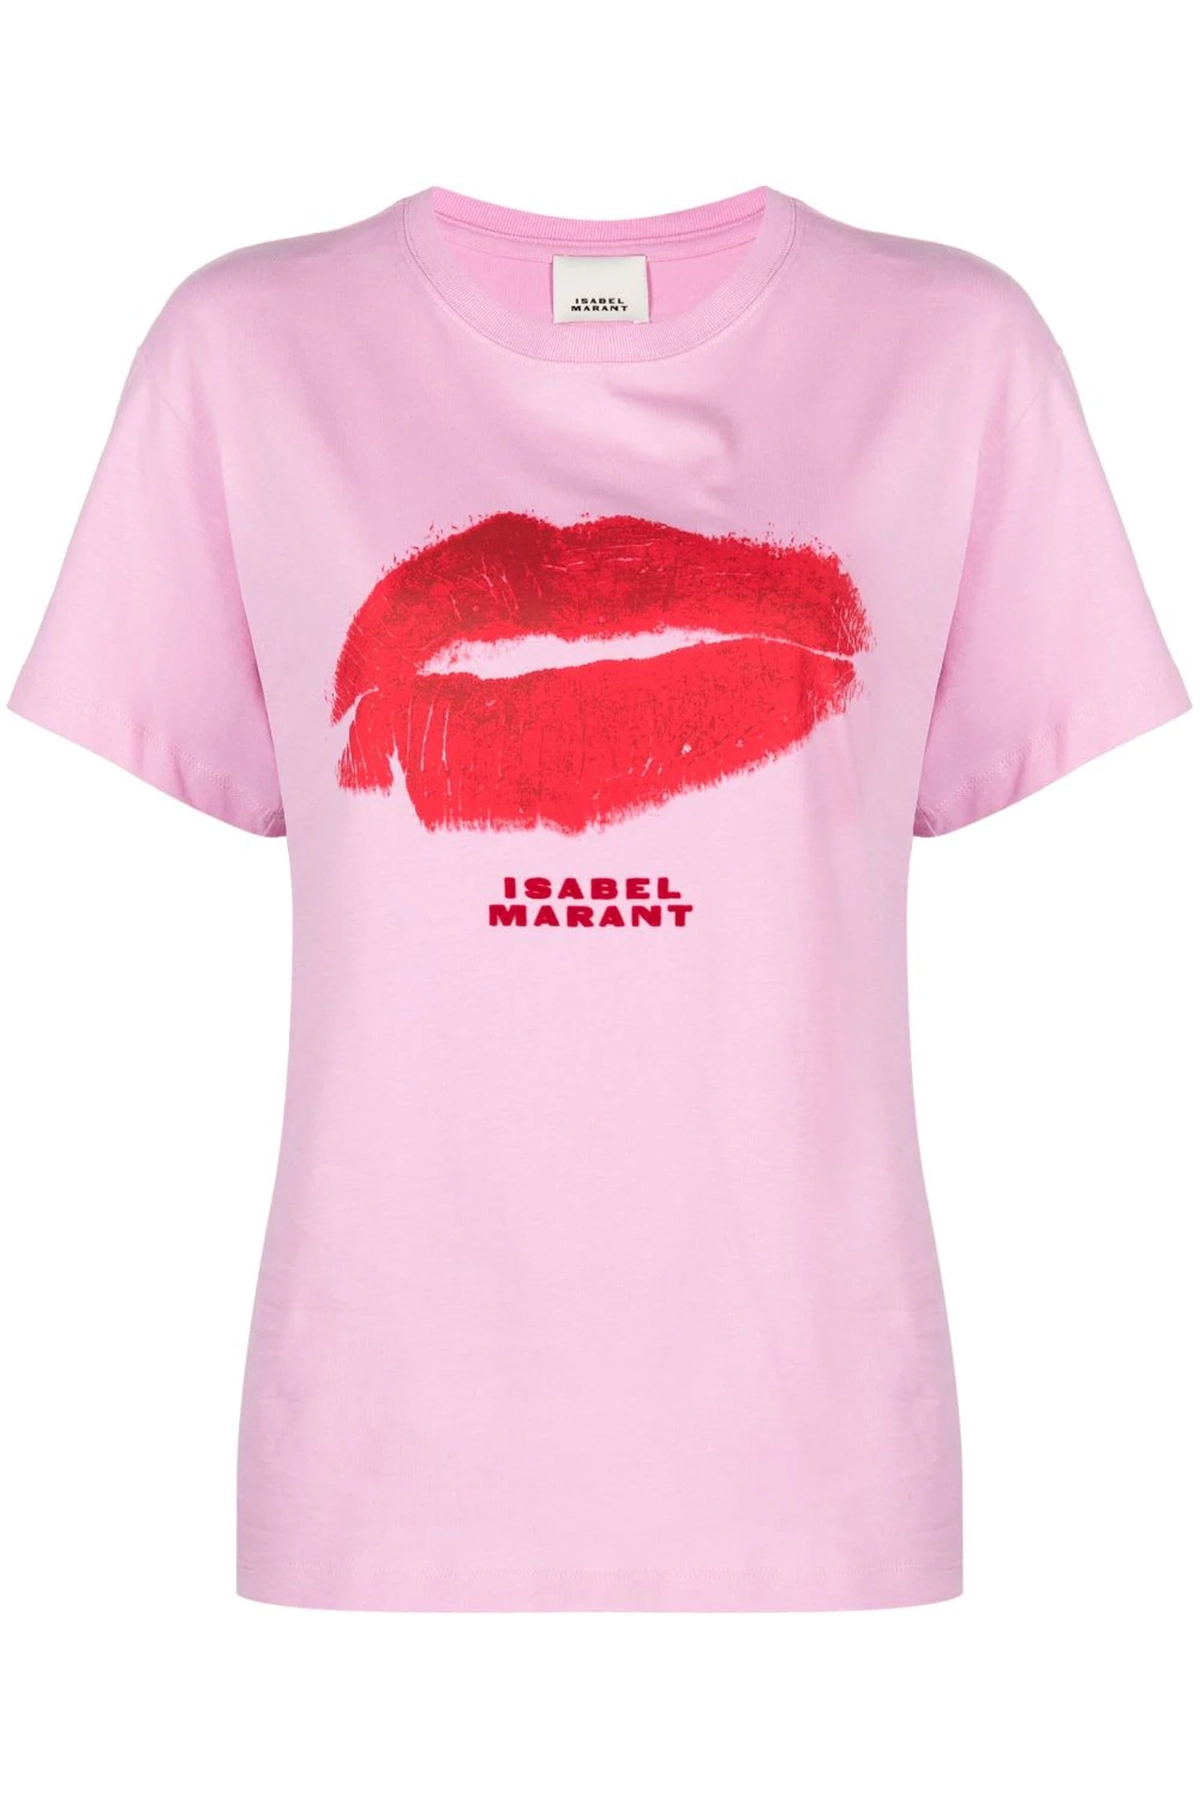 Isabel Marant Yates T-Shirt